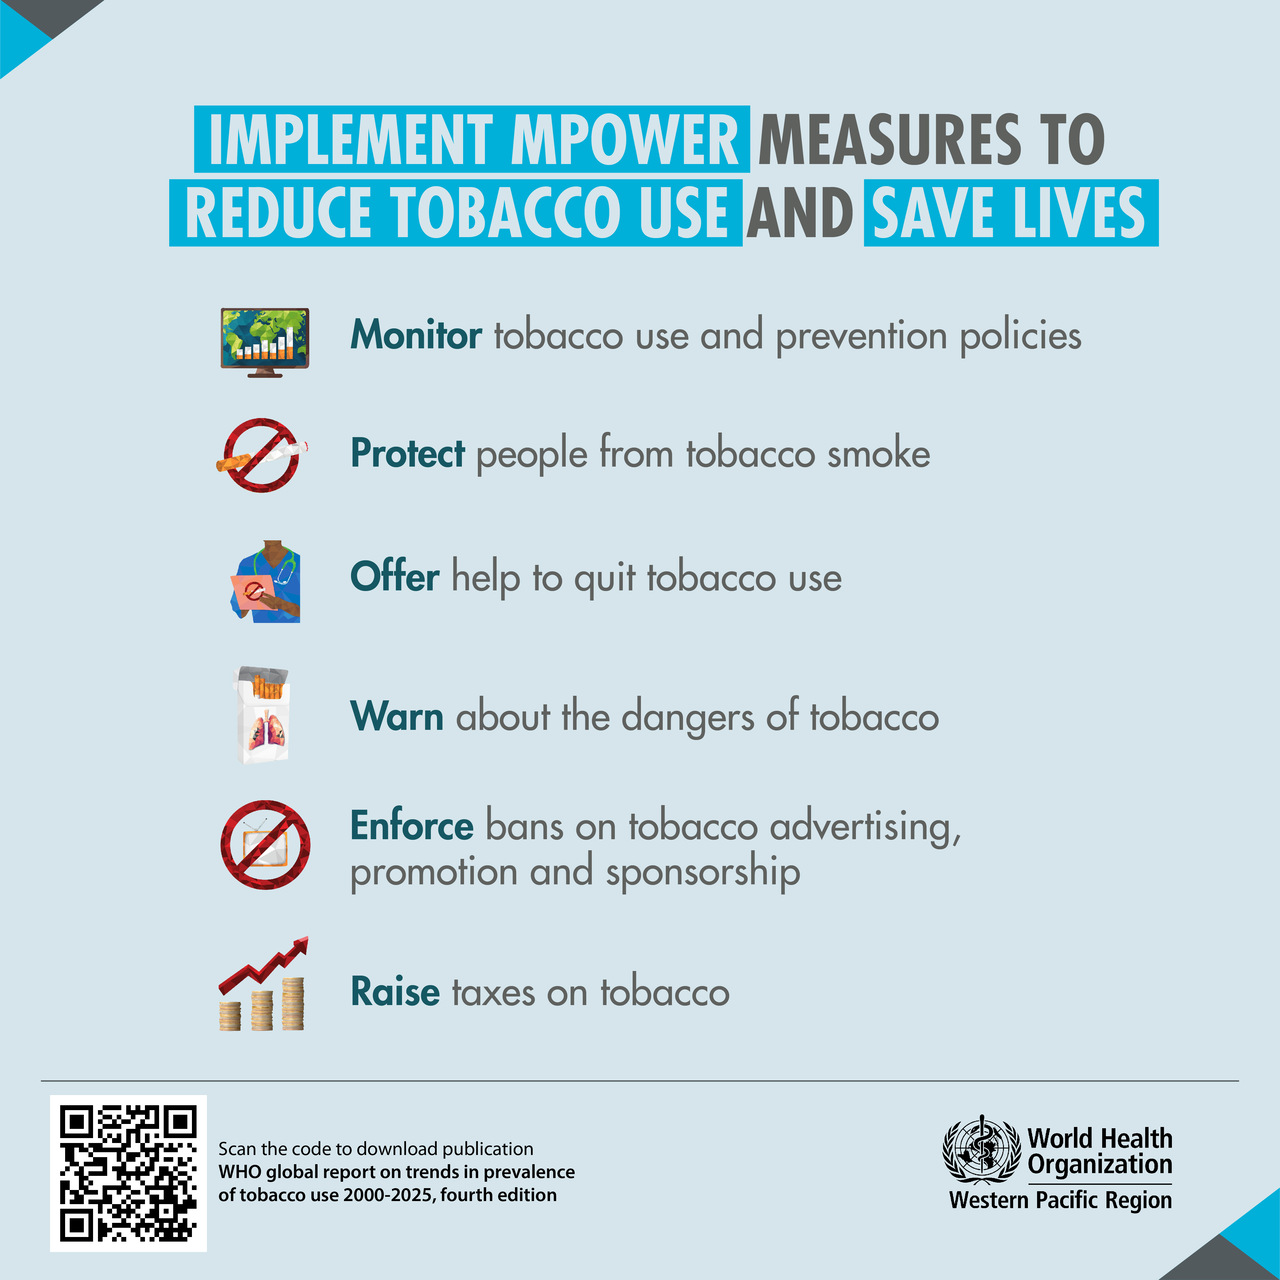 タバコ: 喫煙は依然として地球を汚染していますが、この現象と闘う世界的な対策は効果を上げています